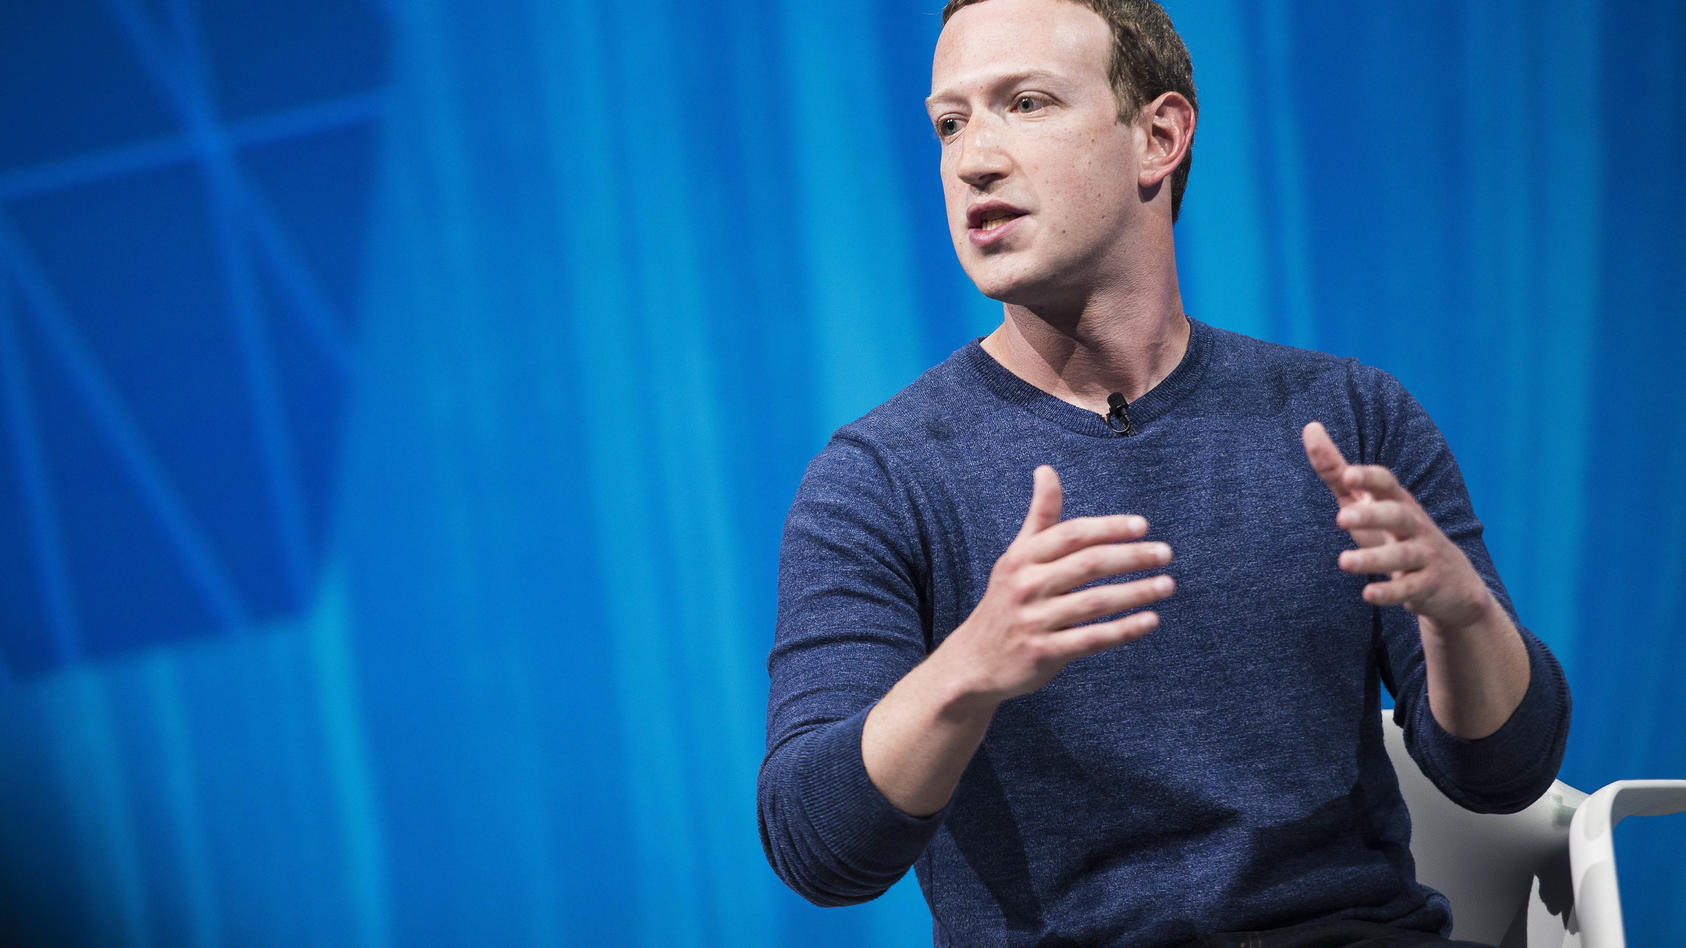 "Aber am Ende glaube ich nicht, dass unsere Plattform das herunternehmen sollte, weil ich denke, dass es Dinge gibt, bei denen verschiedene Menschen falsch liegen. Ich denke nicht, dass sie absichtlich falsch liegen",  findet Mark Zuckerberg.